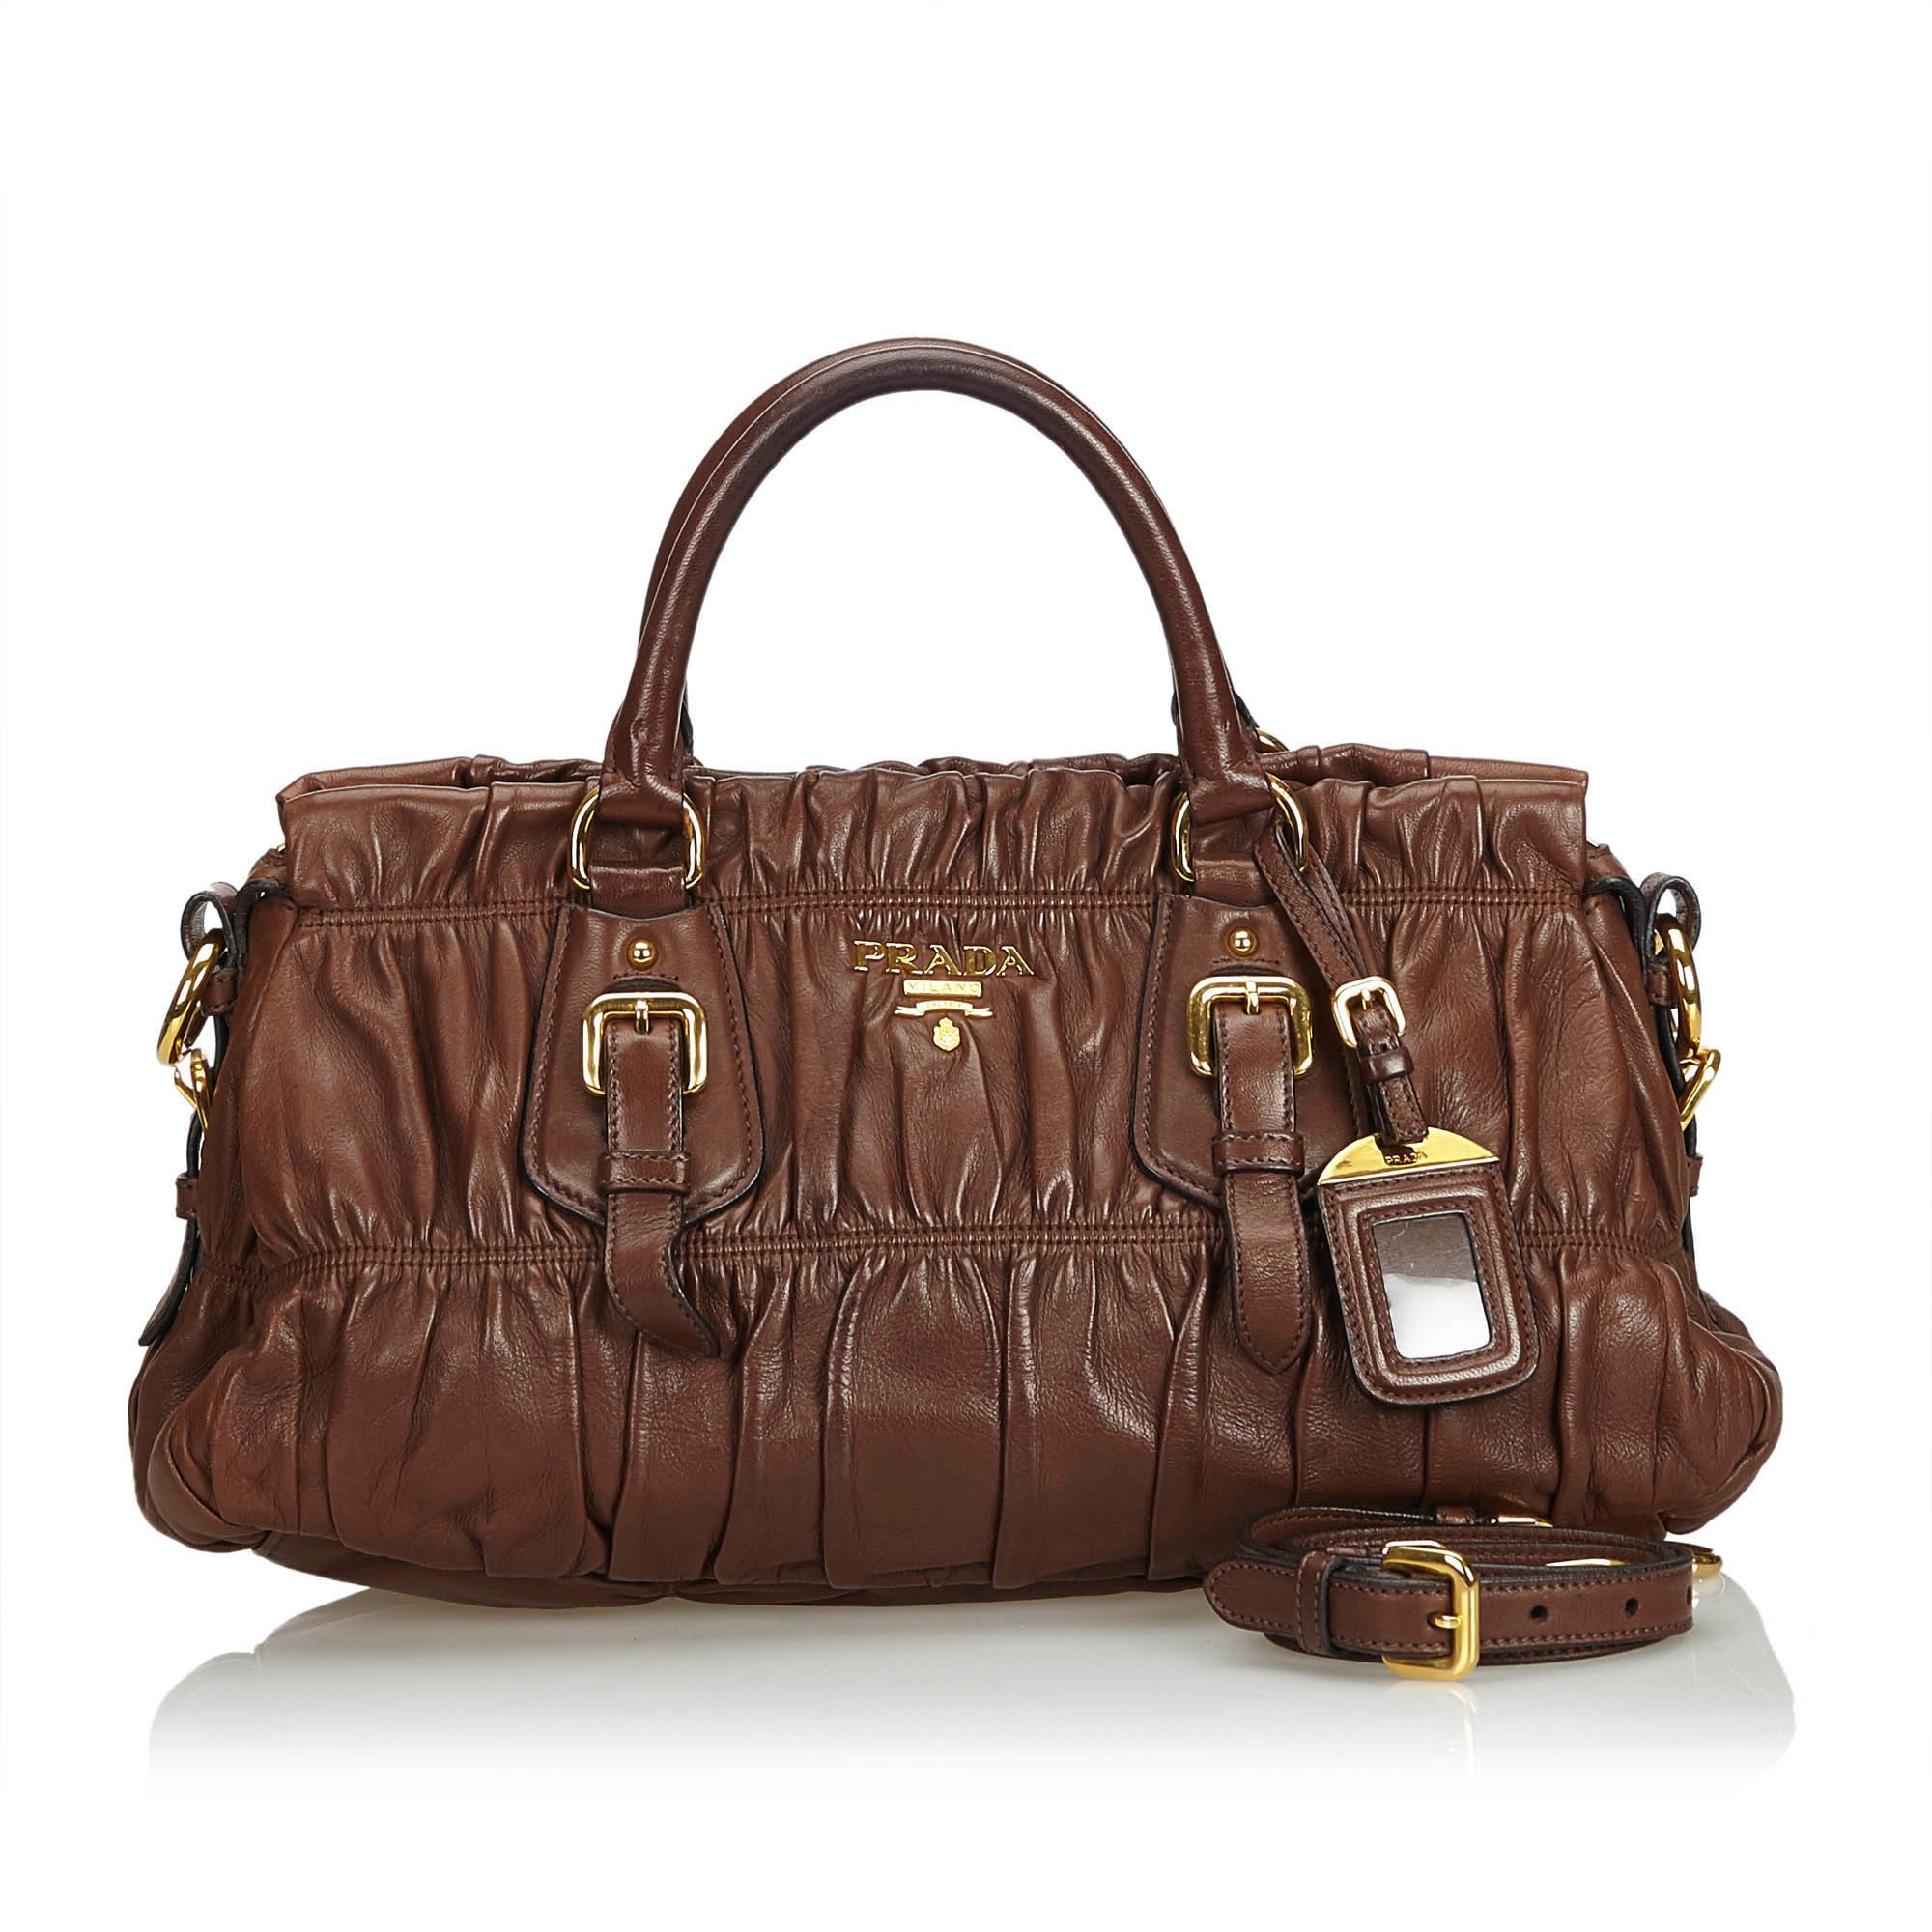 Prada brown leather bag  Brown leather bag, Bags, Leather handbags